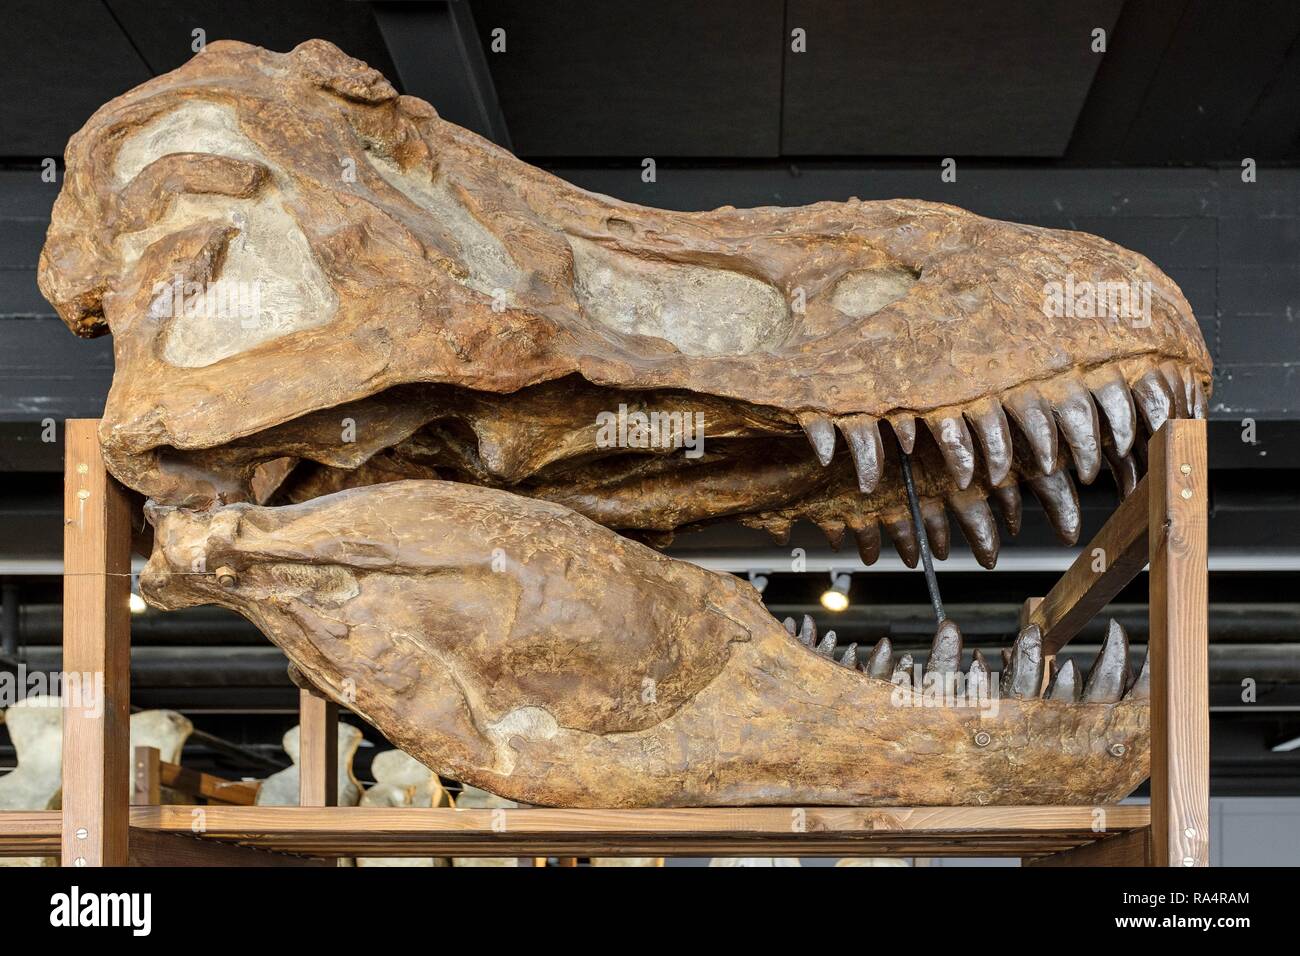 Dania - regione Zelanda - Kopenhaga - Muzeum Historii Naturalnej - Muzeum Zoologiczne , eksponat - modello czaszki prehistorycznego gatunku dinozaura Tyranozaur - Danimarca - Zelanda regione - Copenhagen - Foto Stock